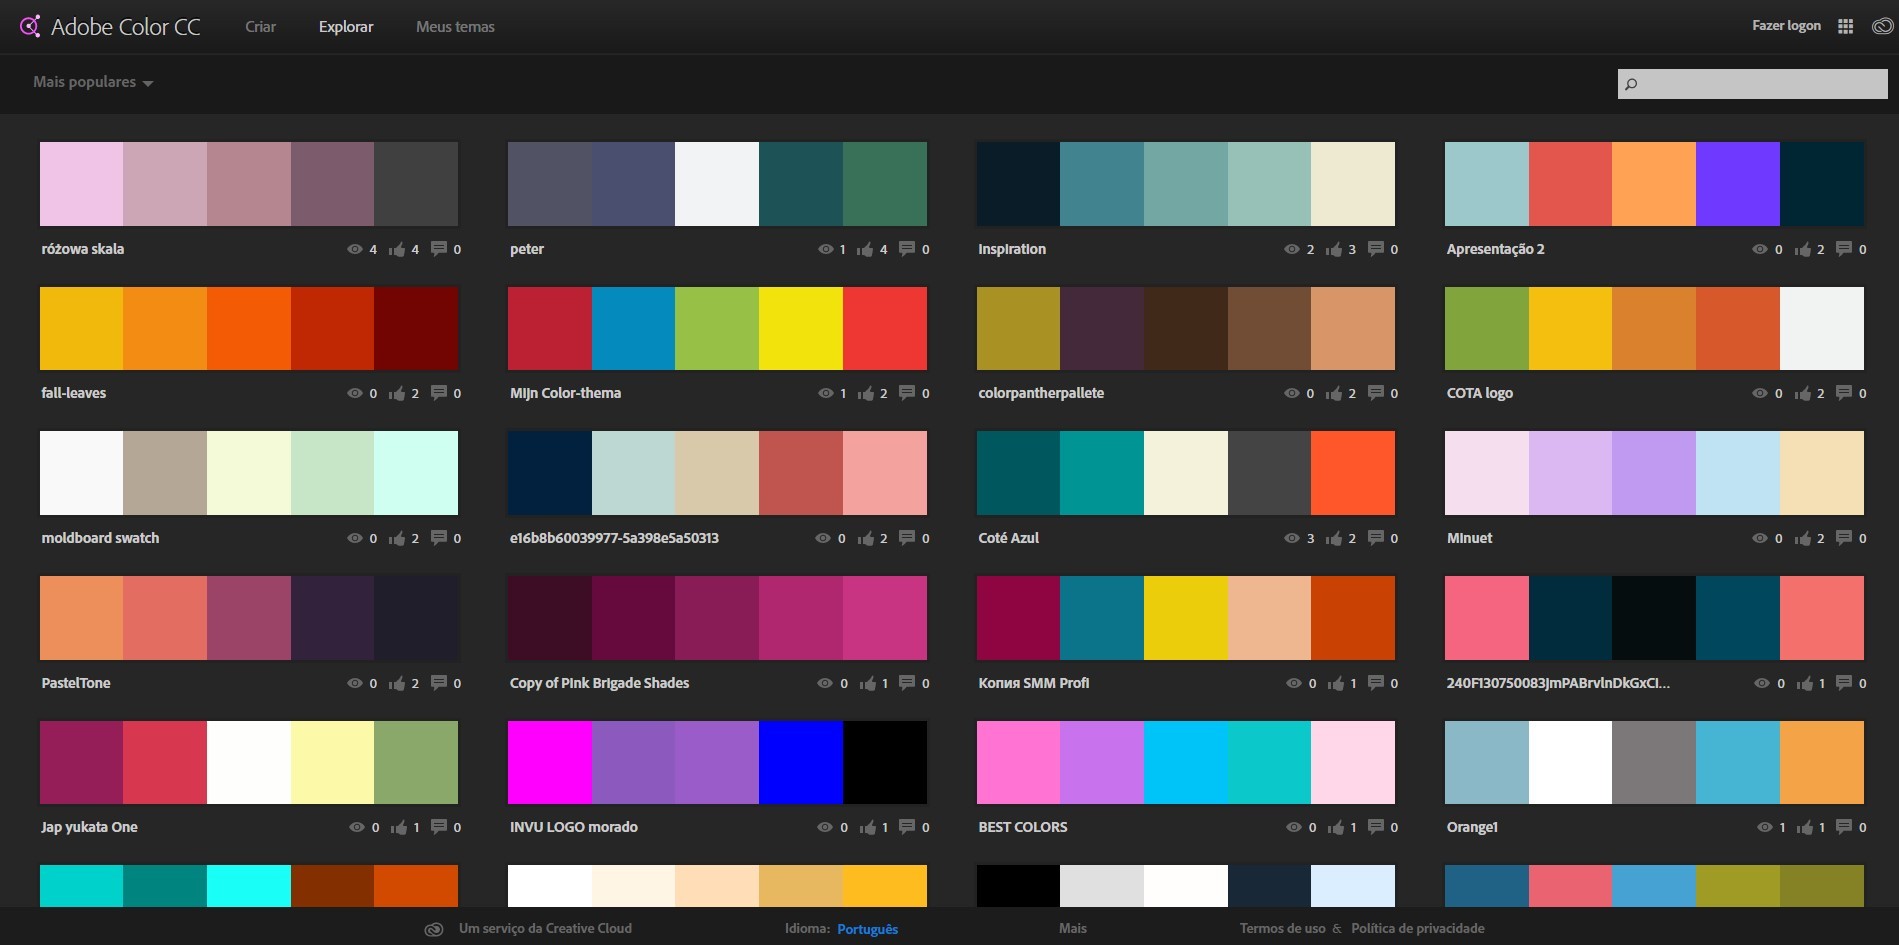 Diferenças entre definições de cores - Gráfica CMYK25